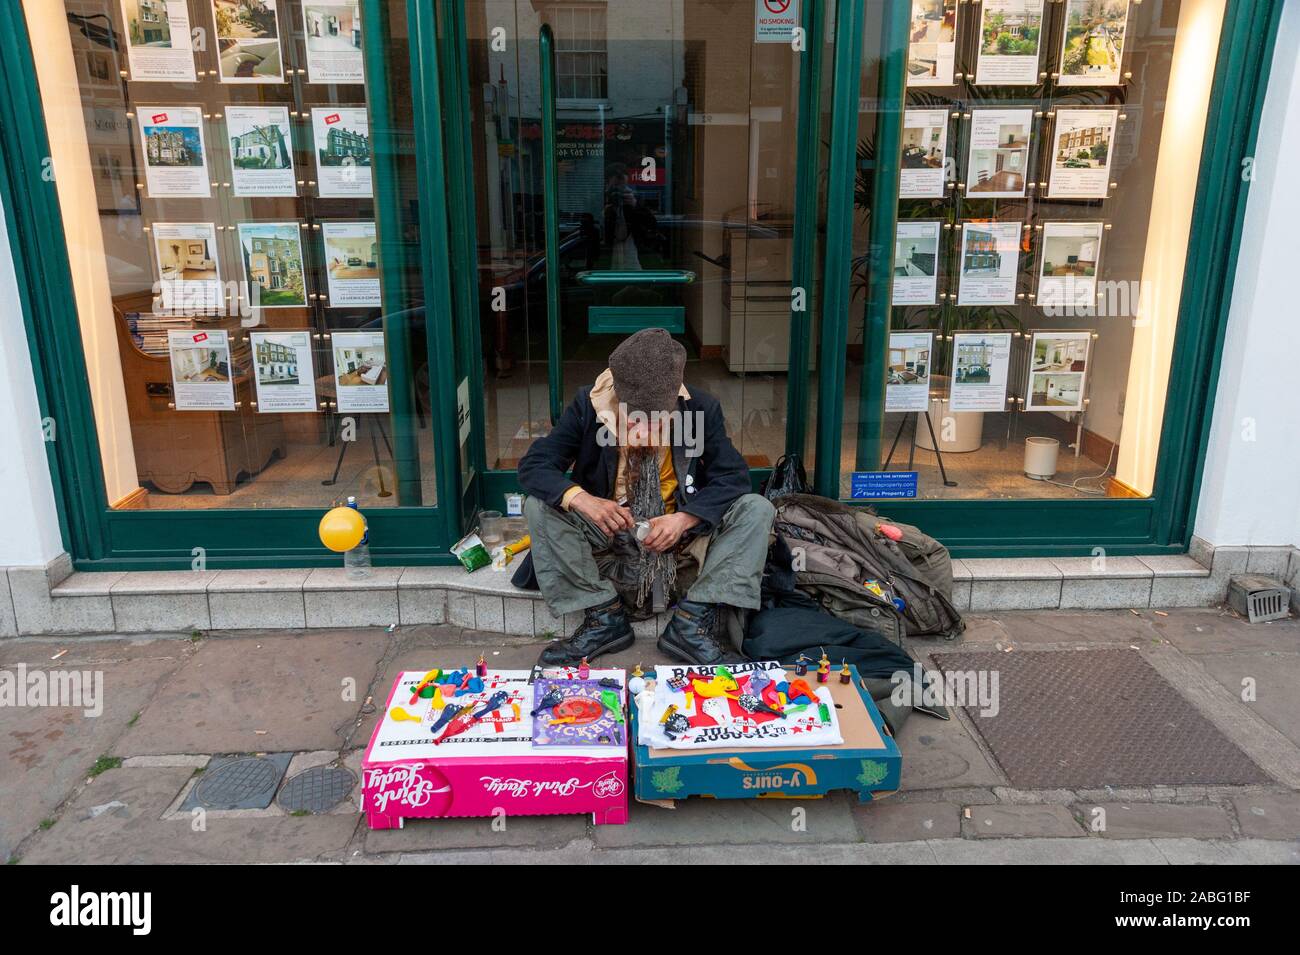 Homeless man sitting outside estate agent, Camden, London, UK Stock Photo